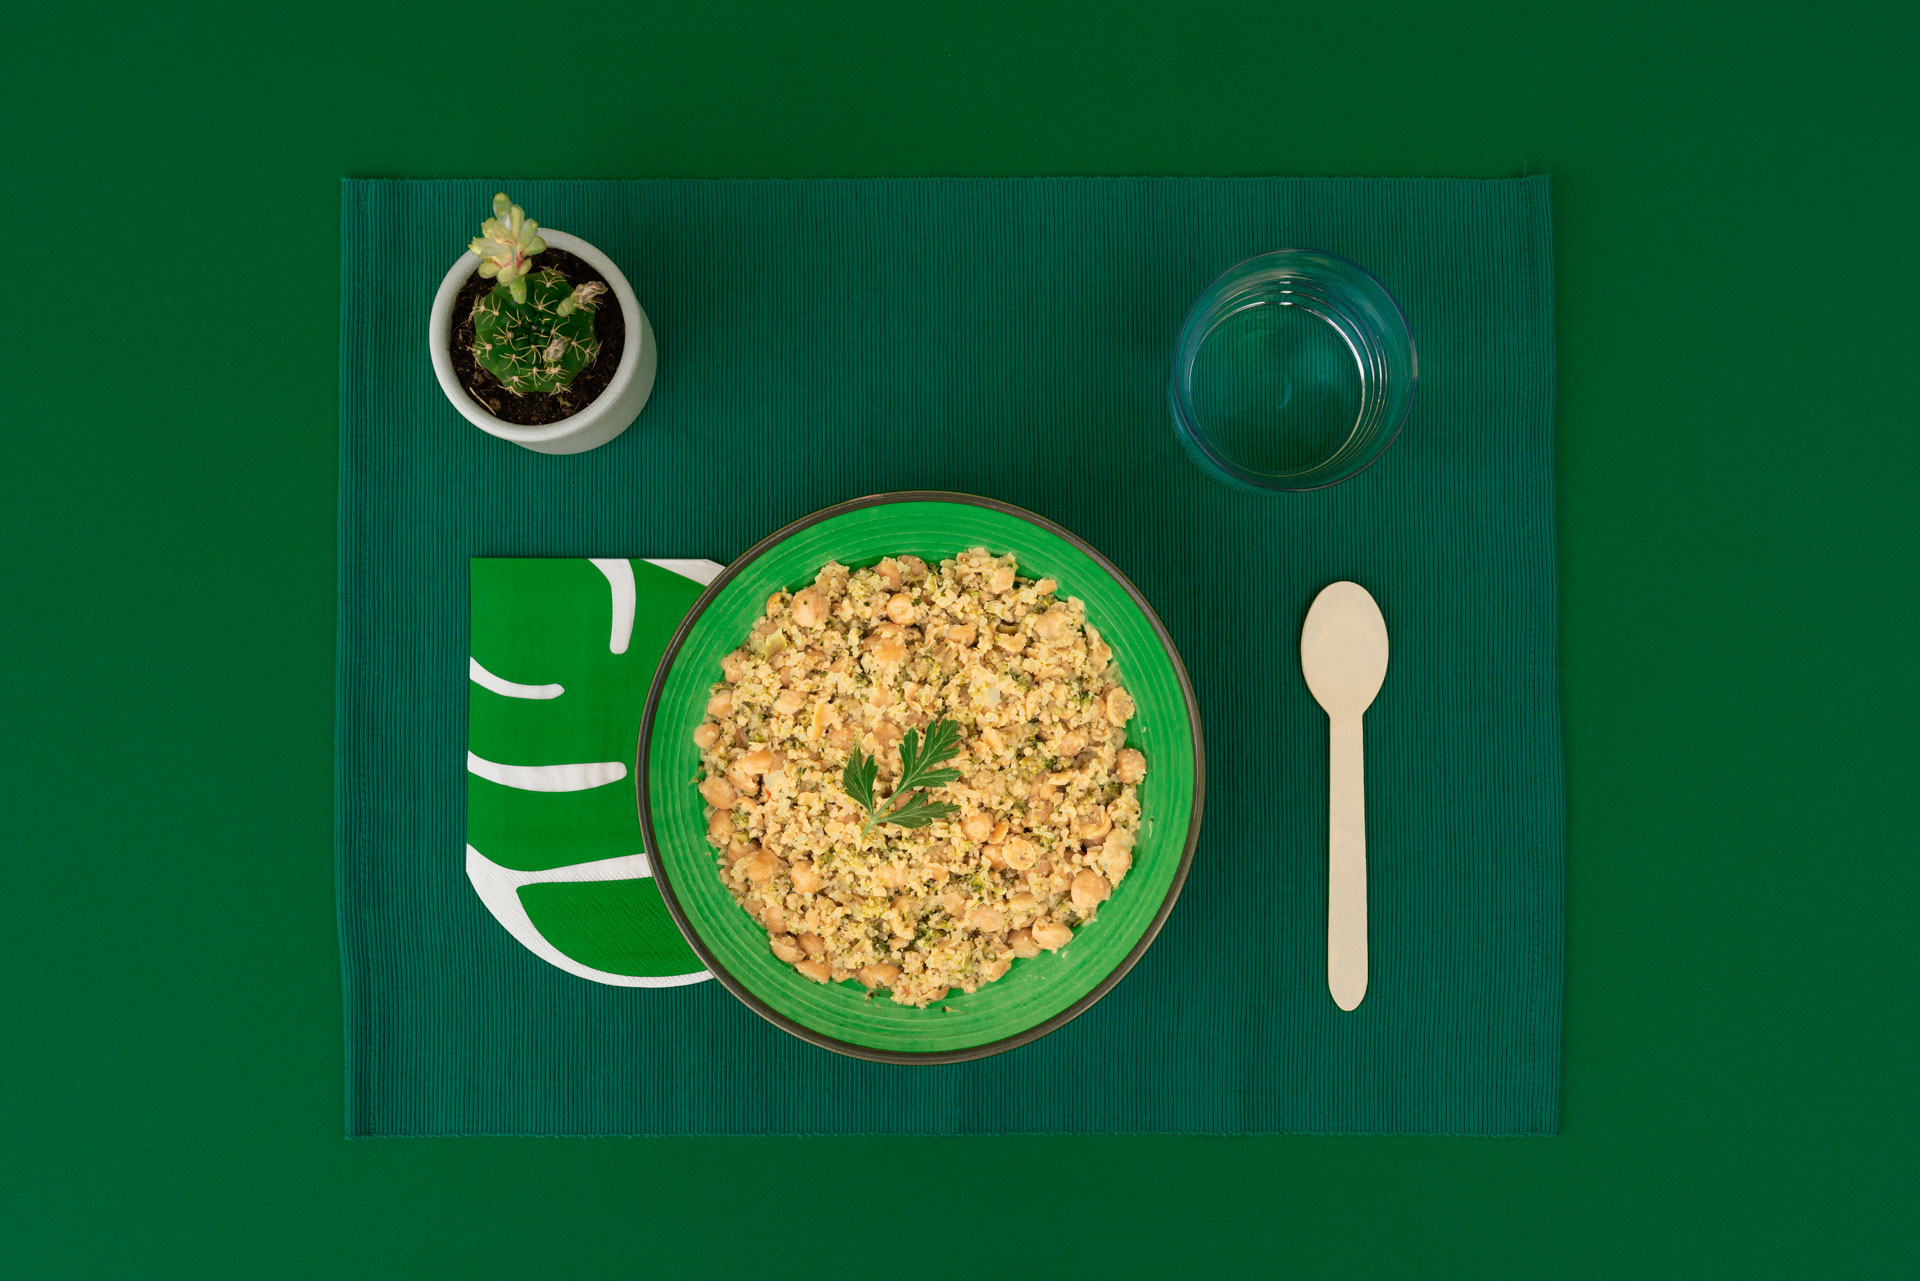 La zuppa pronta Ivo’s ai legumi e spezie è un pasto healthy e gustoso, pronto in pochi minuti!